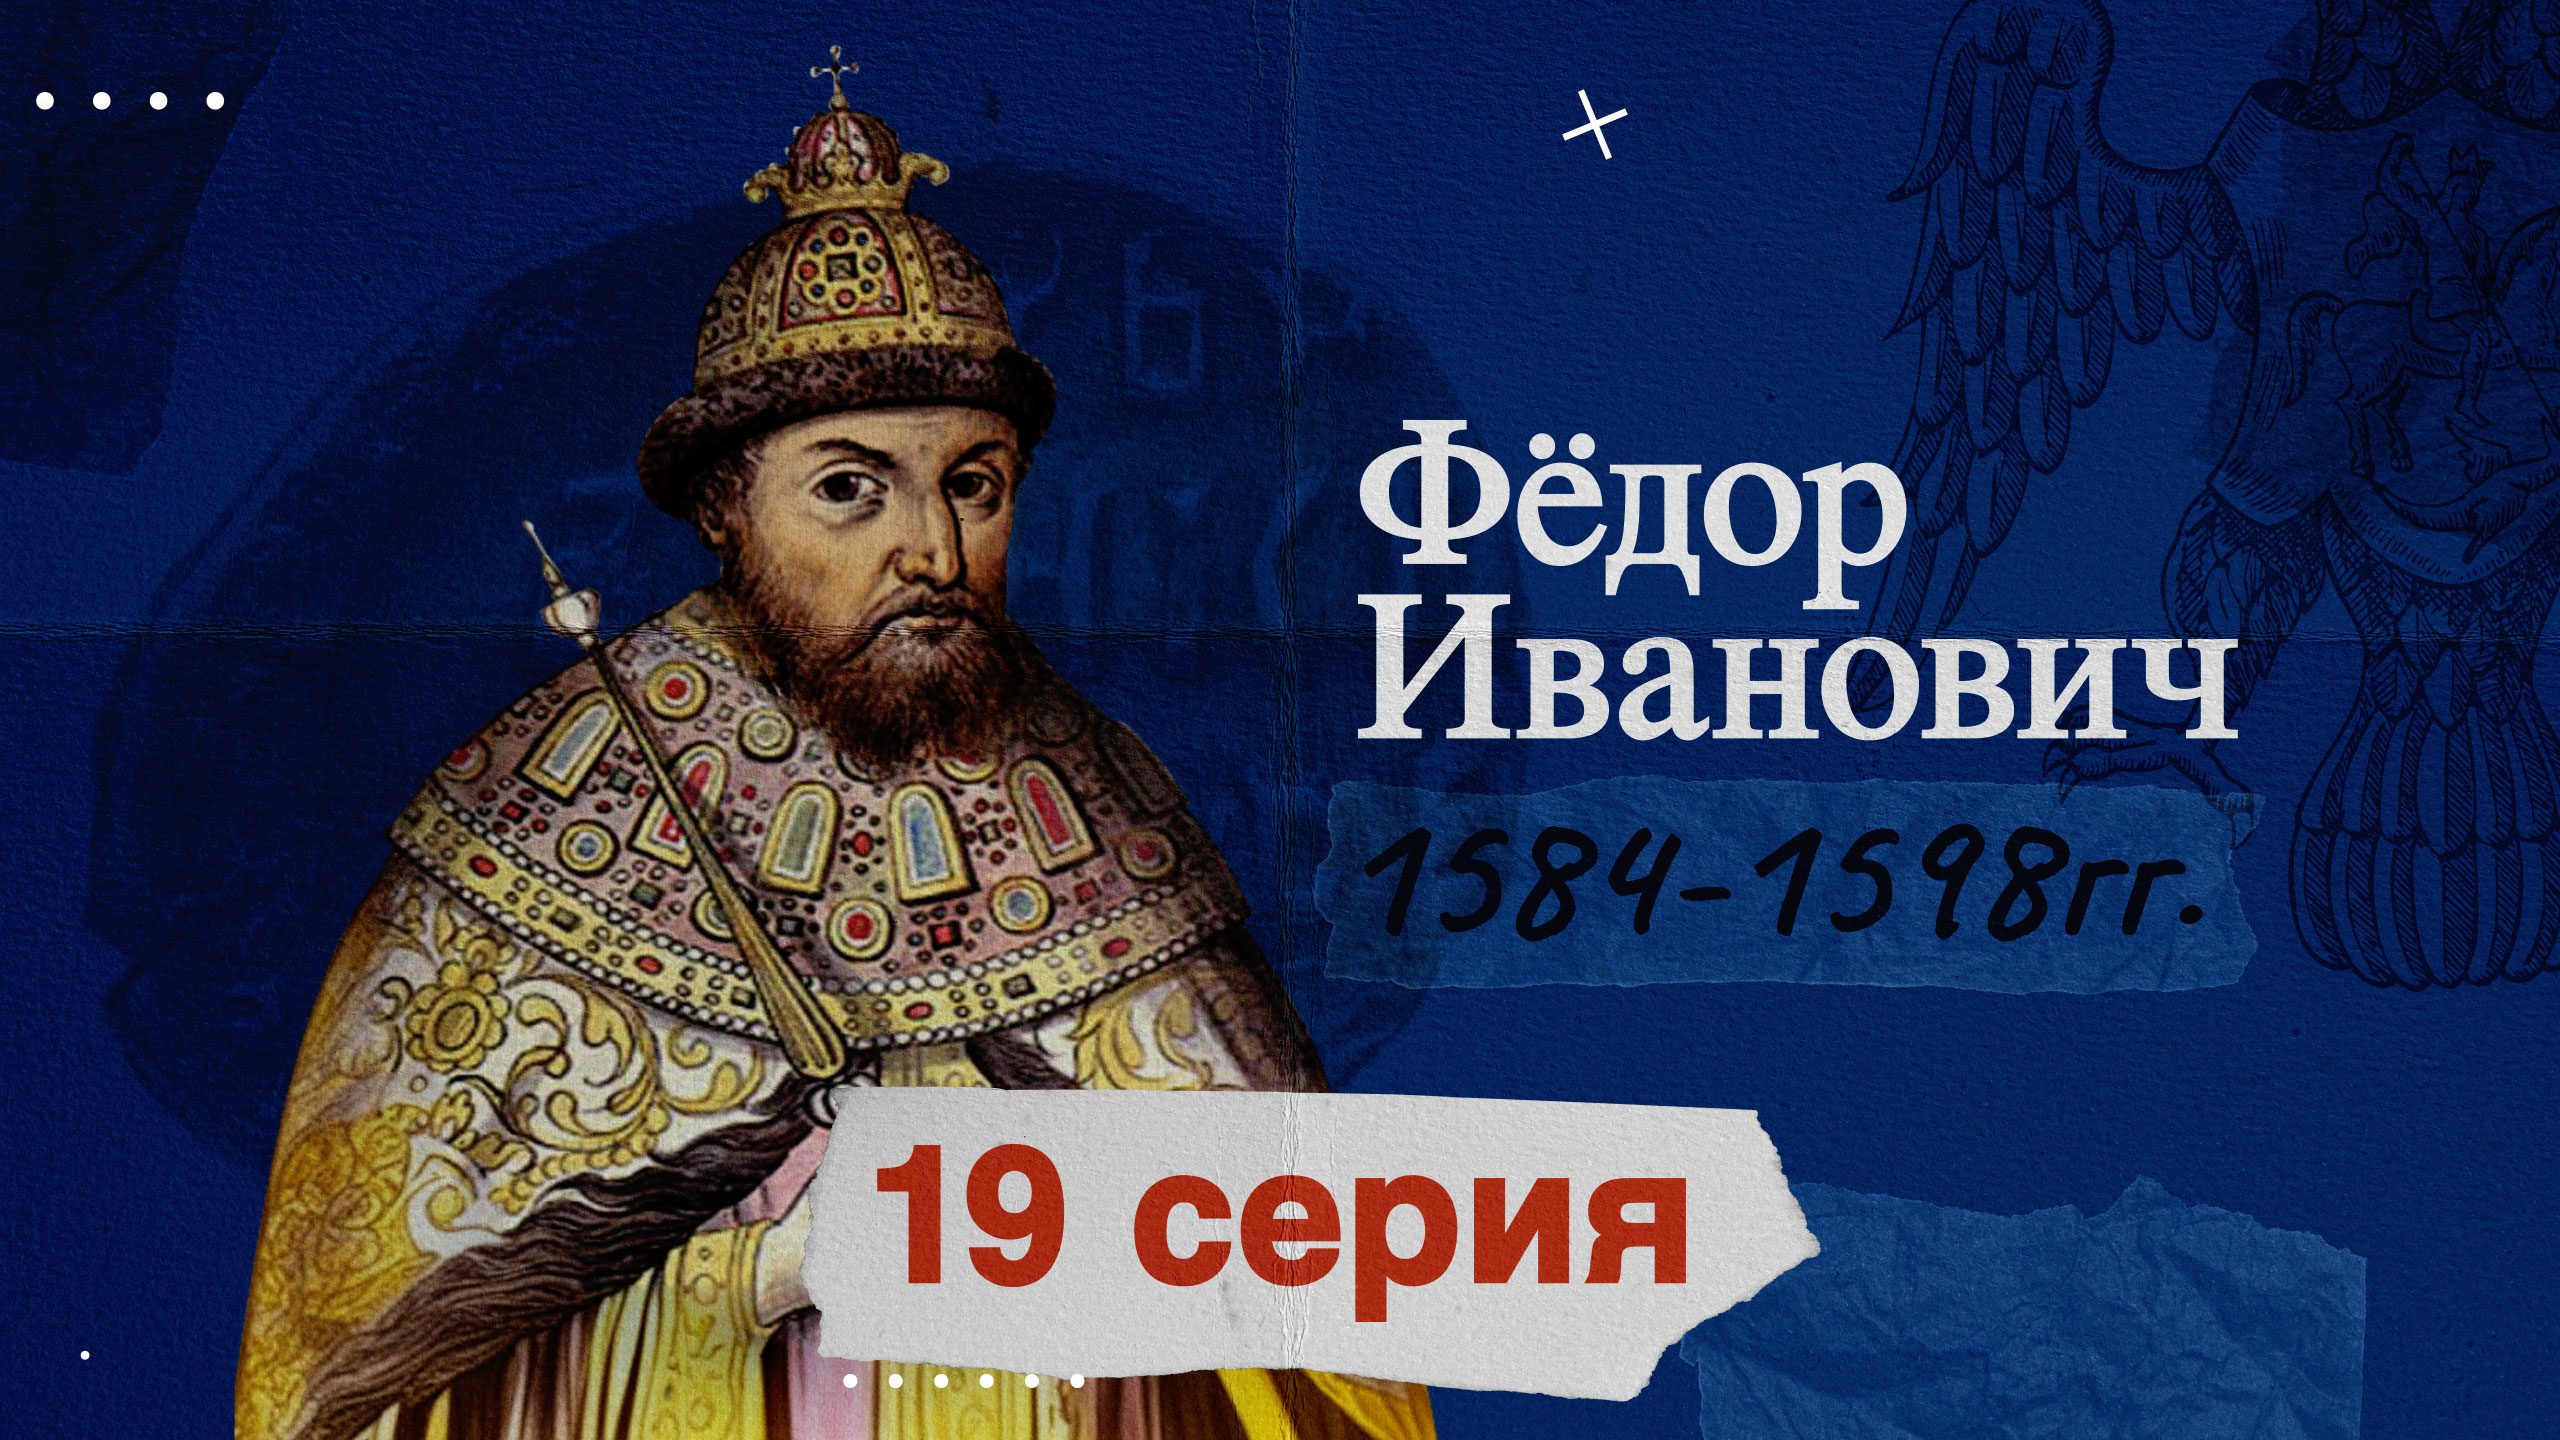 Царь Фёдор Иванович – 1584-1598г. История России